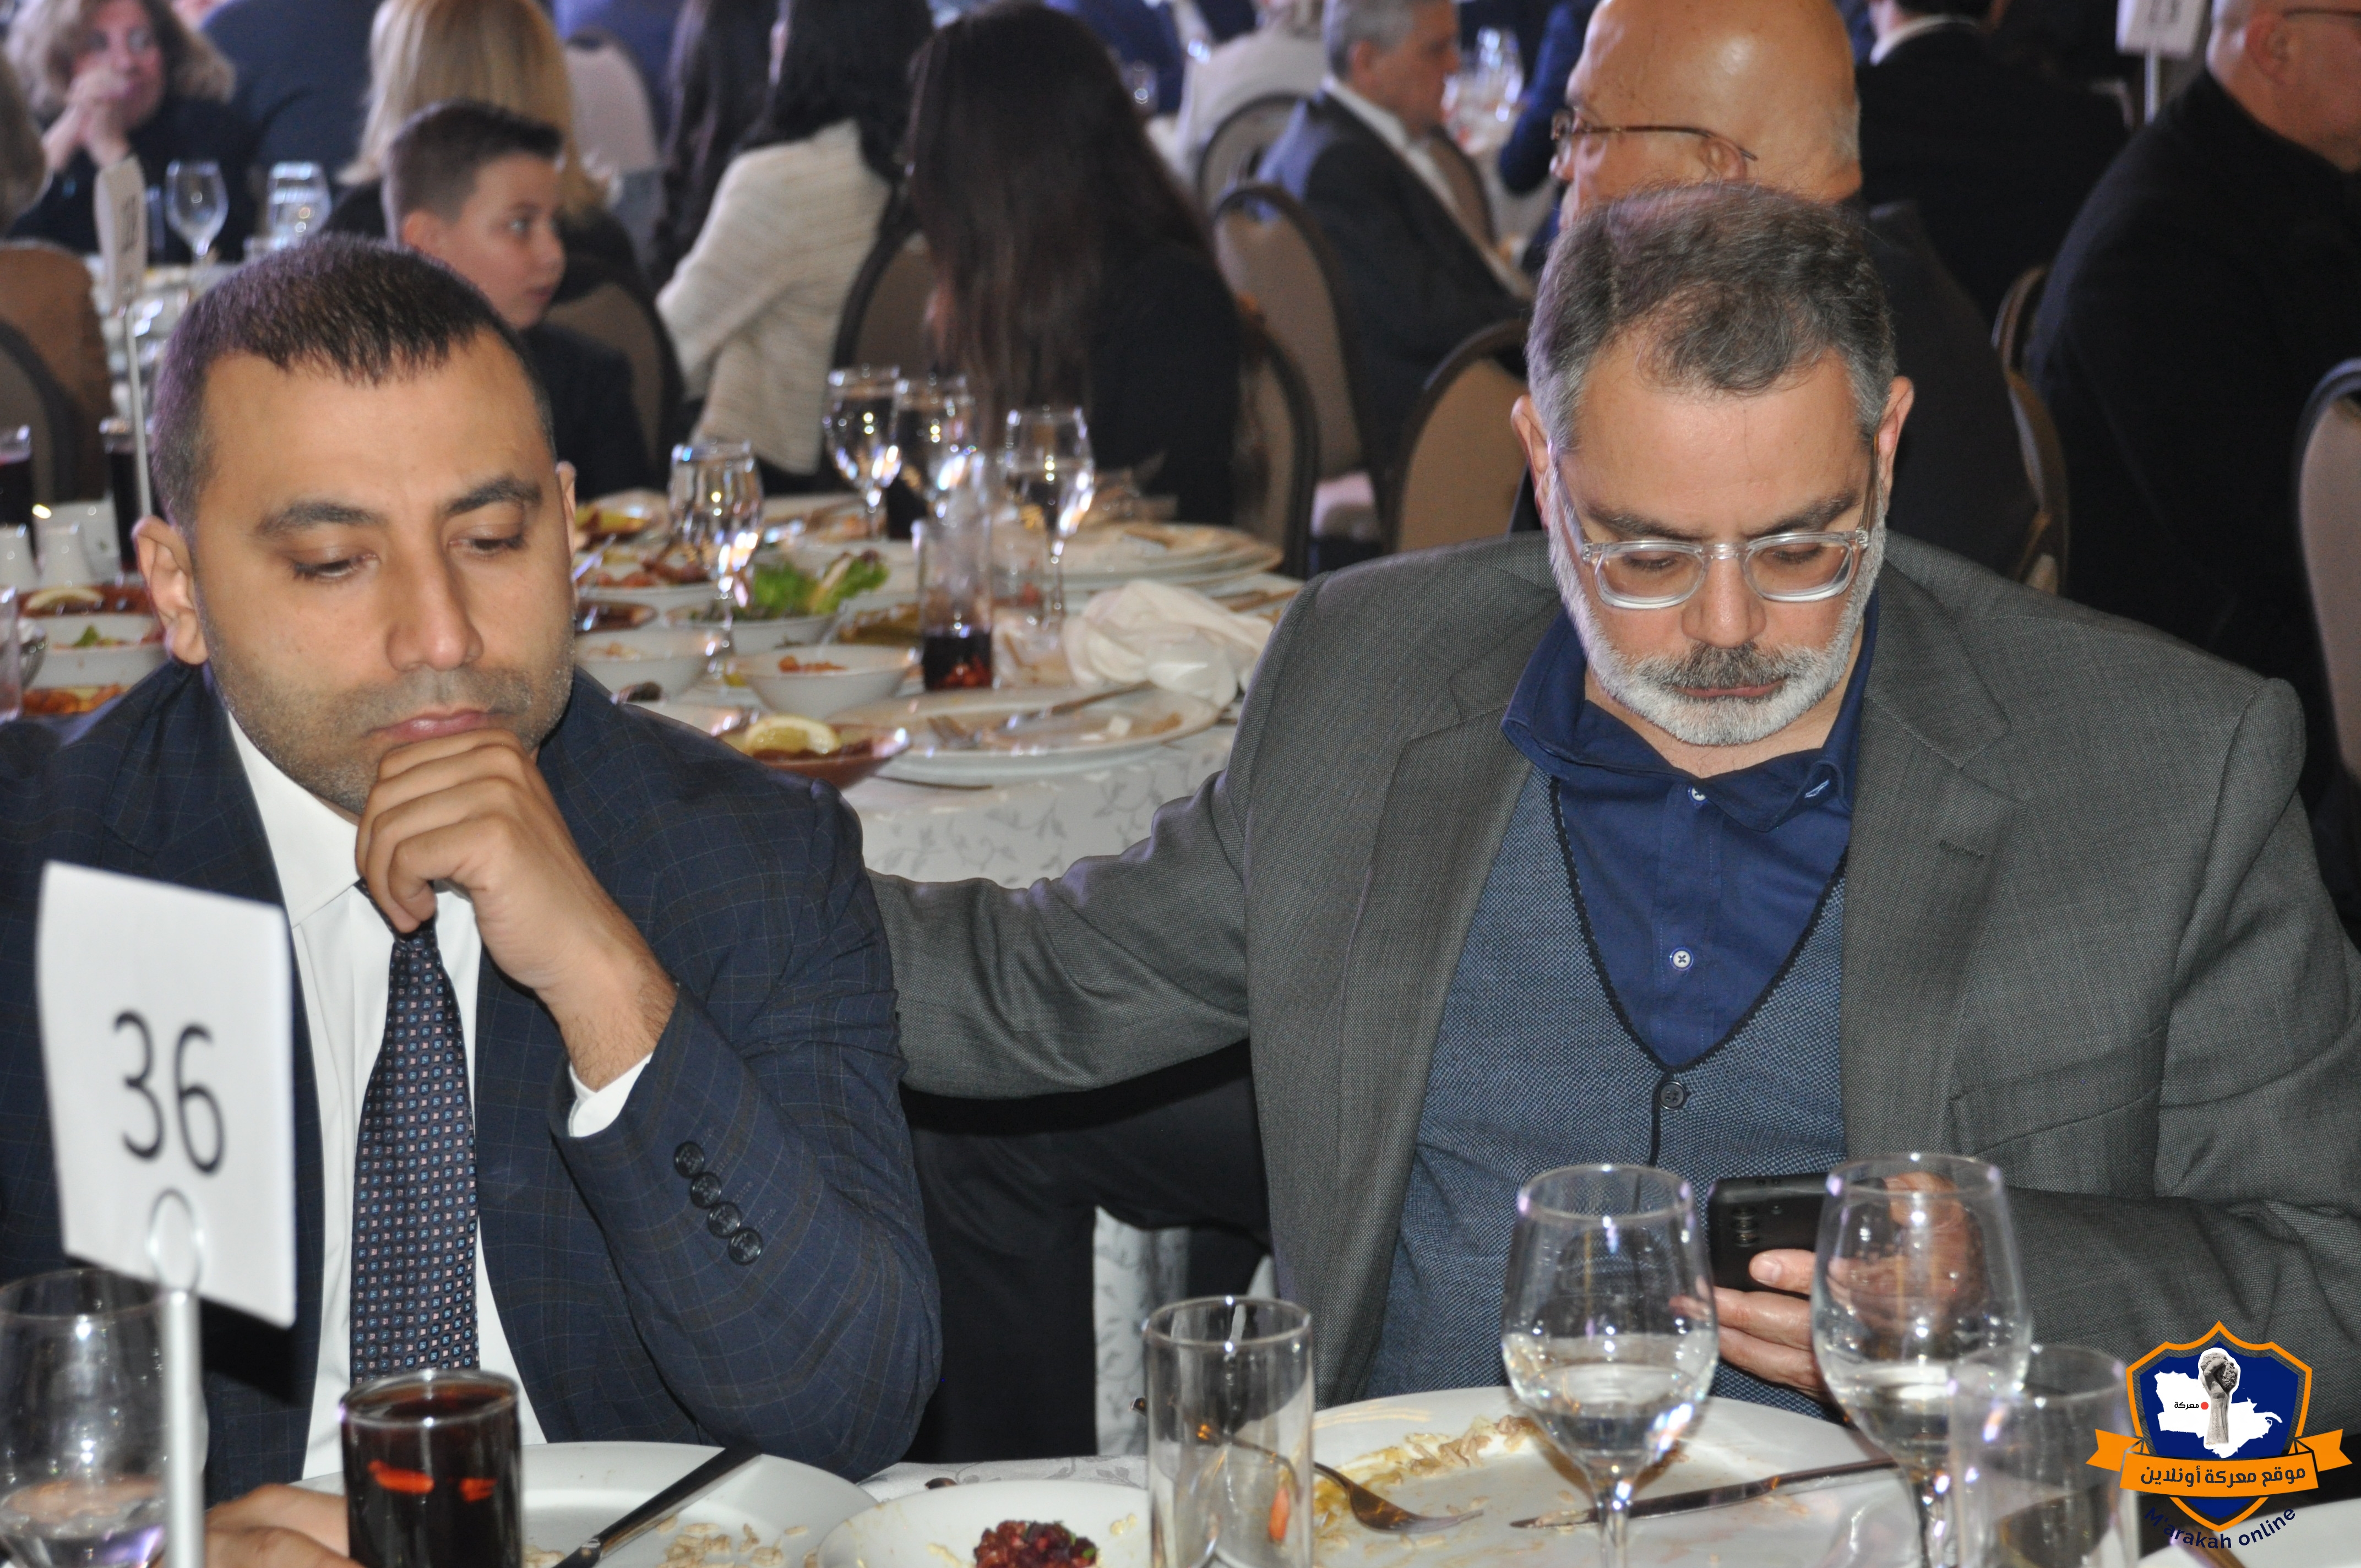  بالصور:حفل إفطار تكريمي لسماحة المفتي أقامته جمعية بيروت منارتي